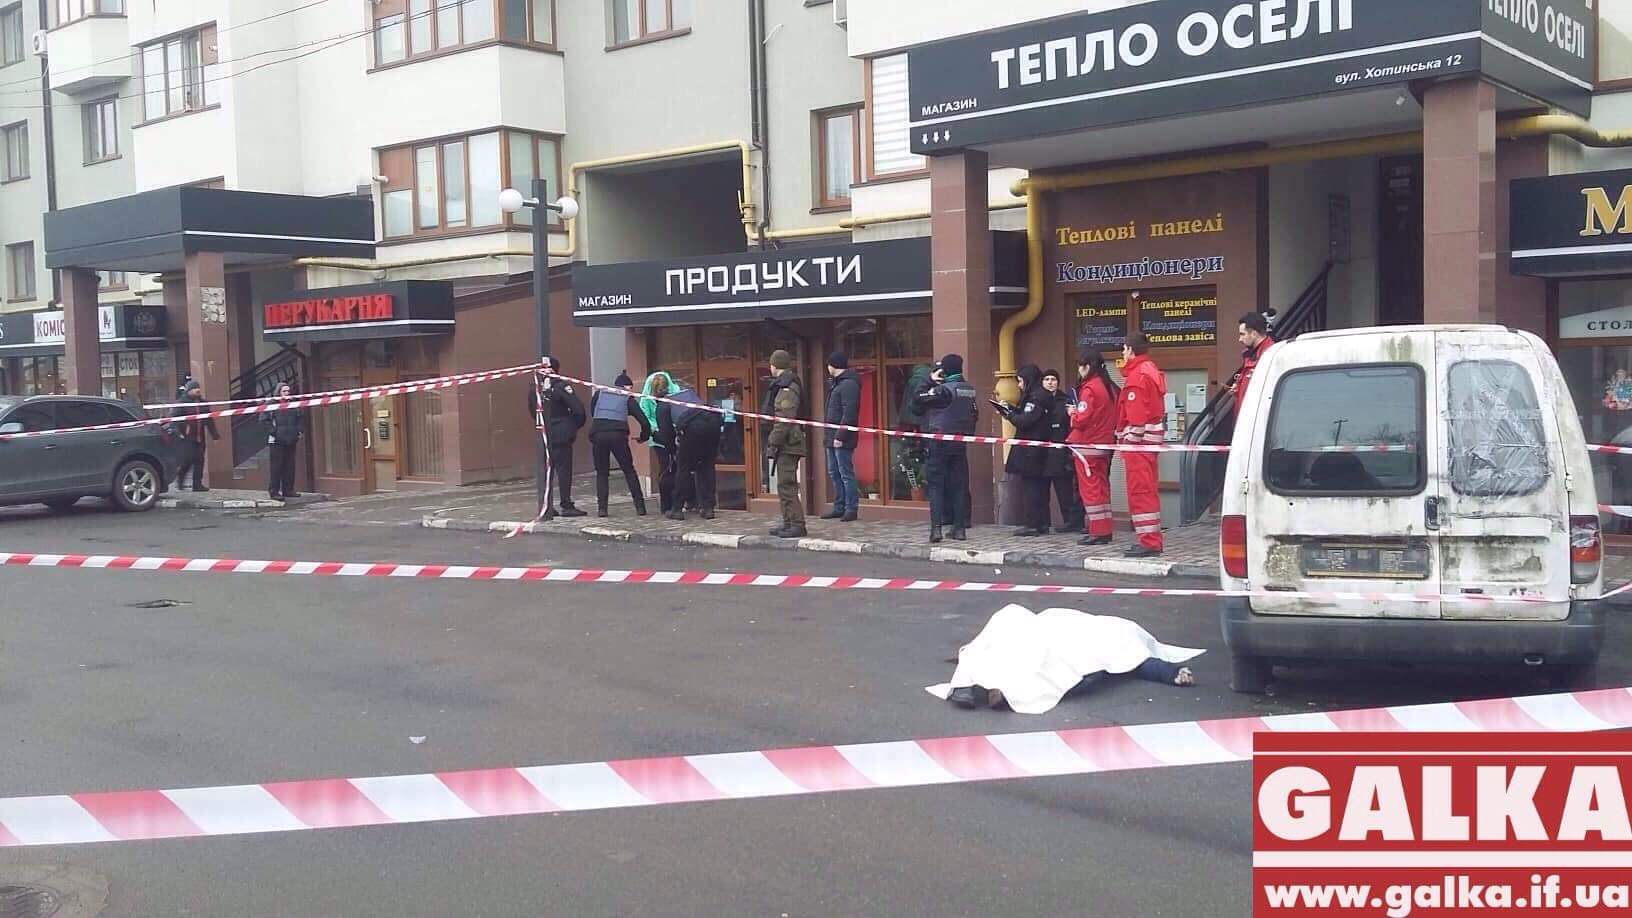 Автомобіль, який міг бути причетний до вбивства у Франківську, знайшли спаленим (ФОТО)